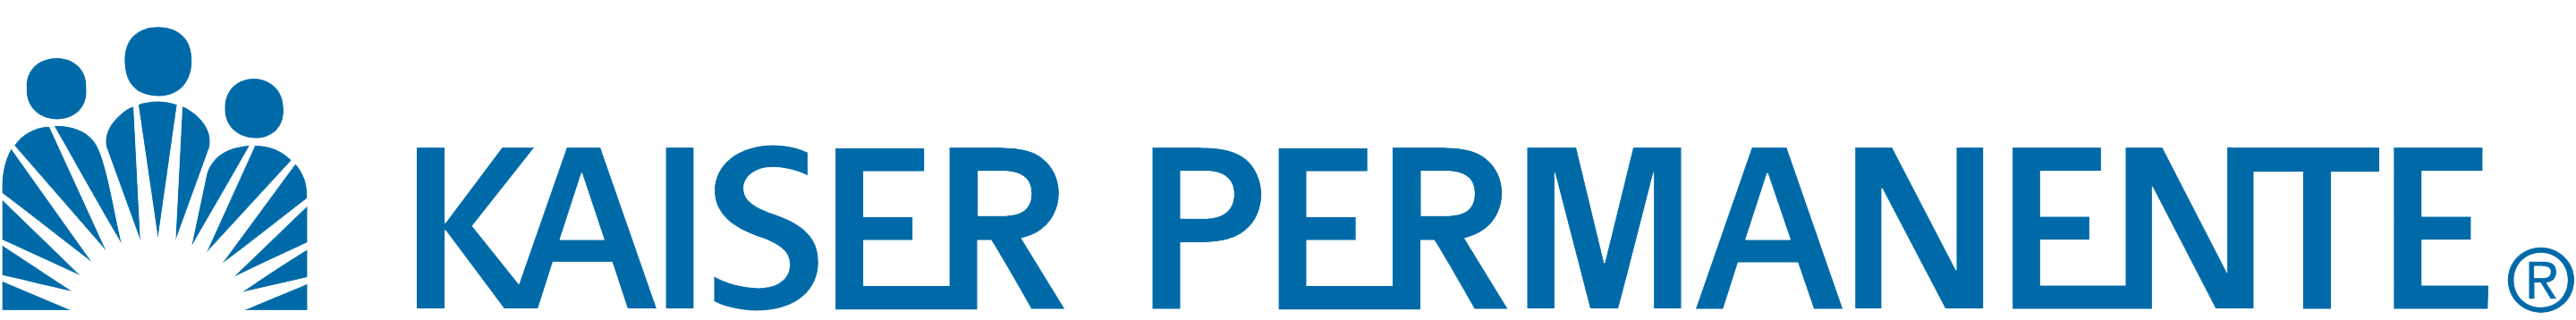 Logo link to Kaiser Permanente website.